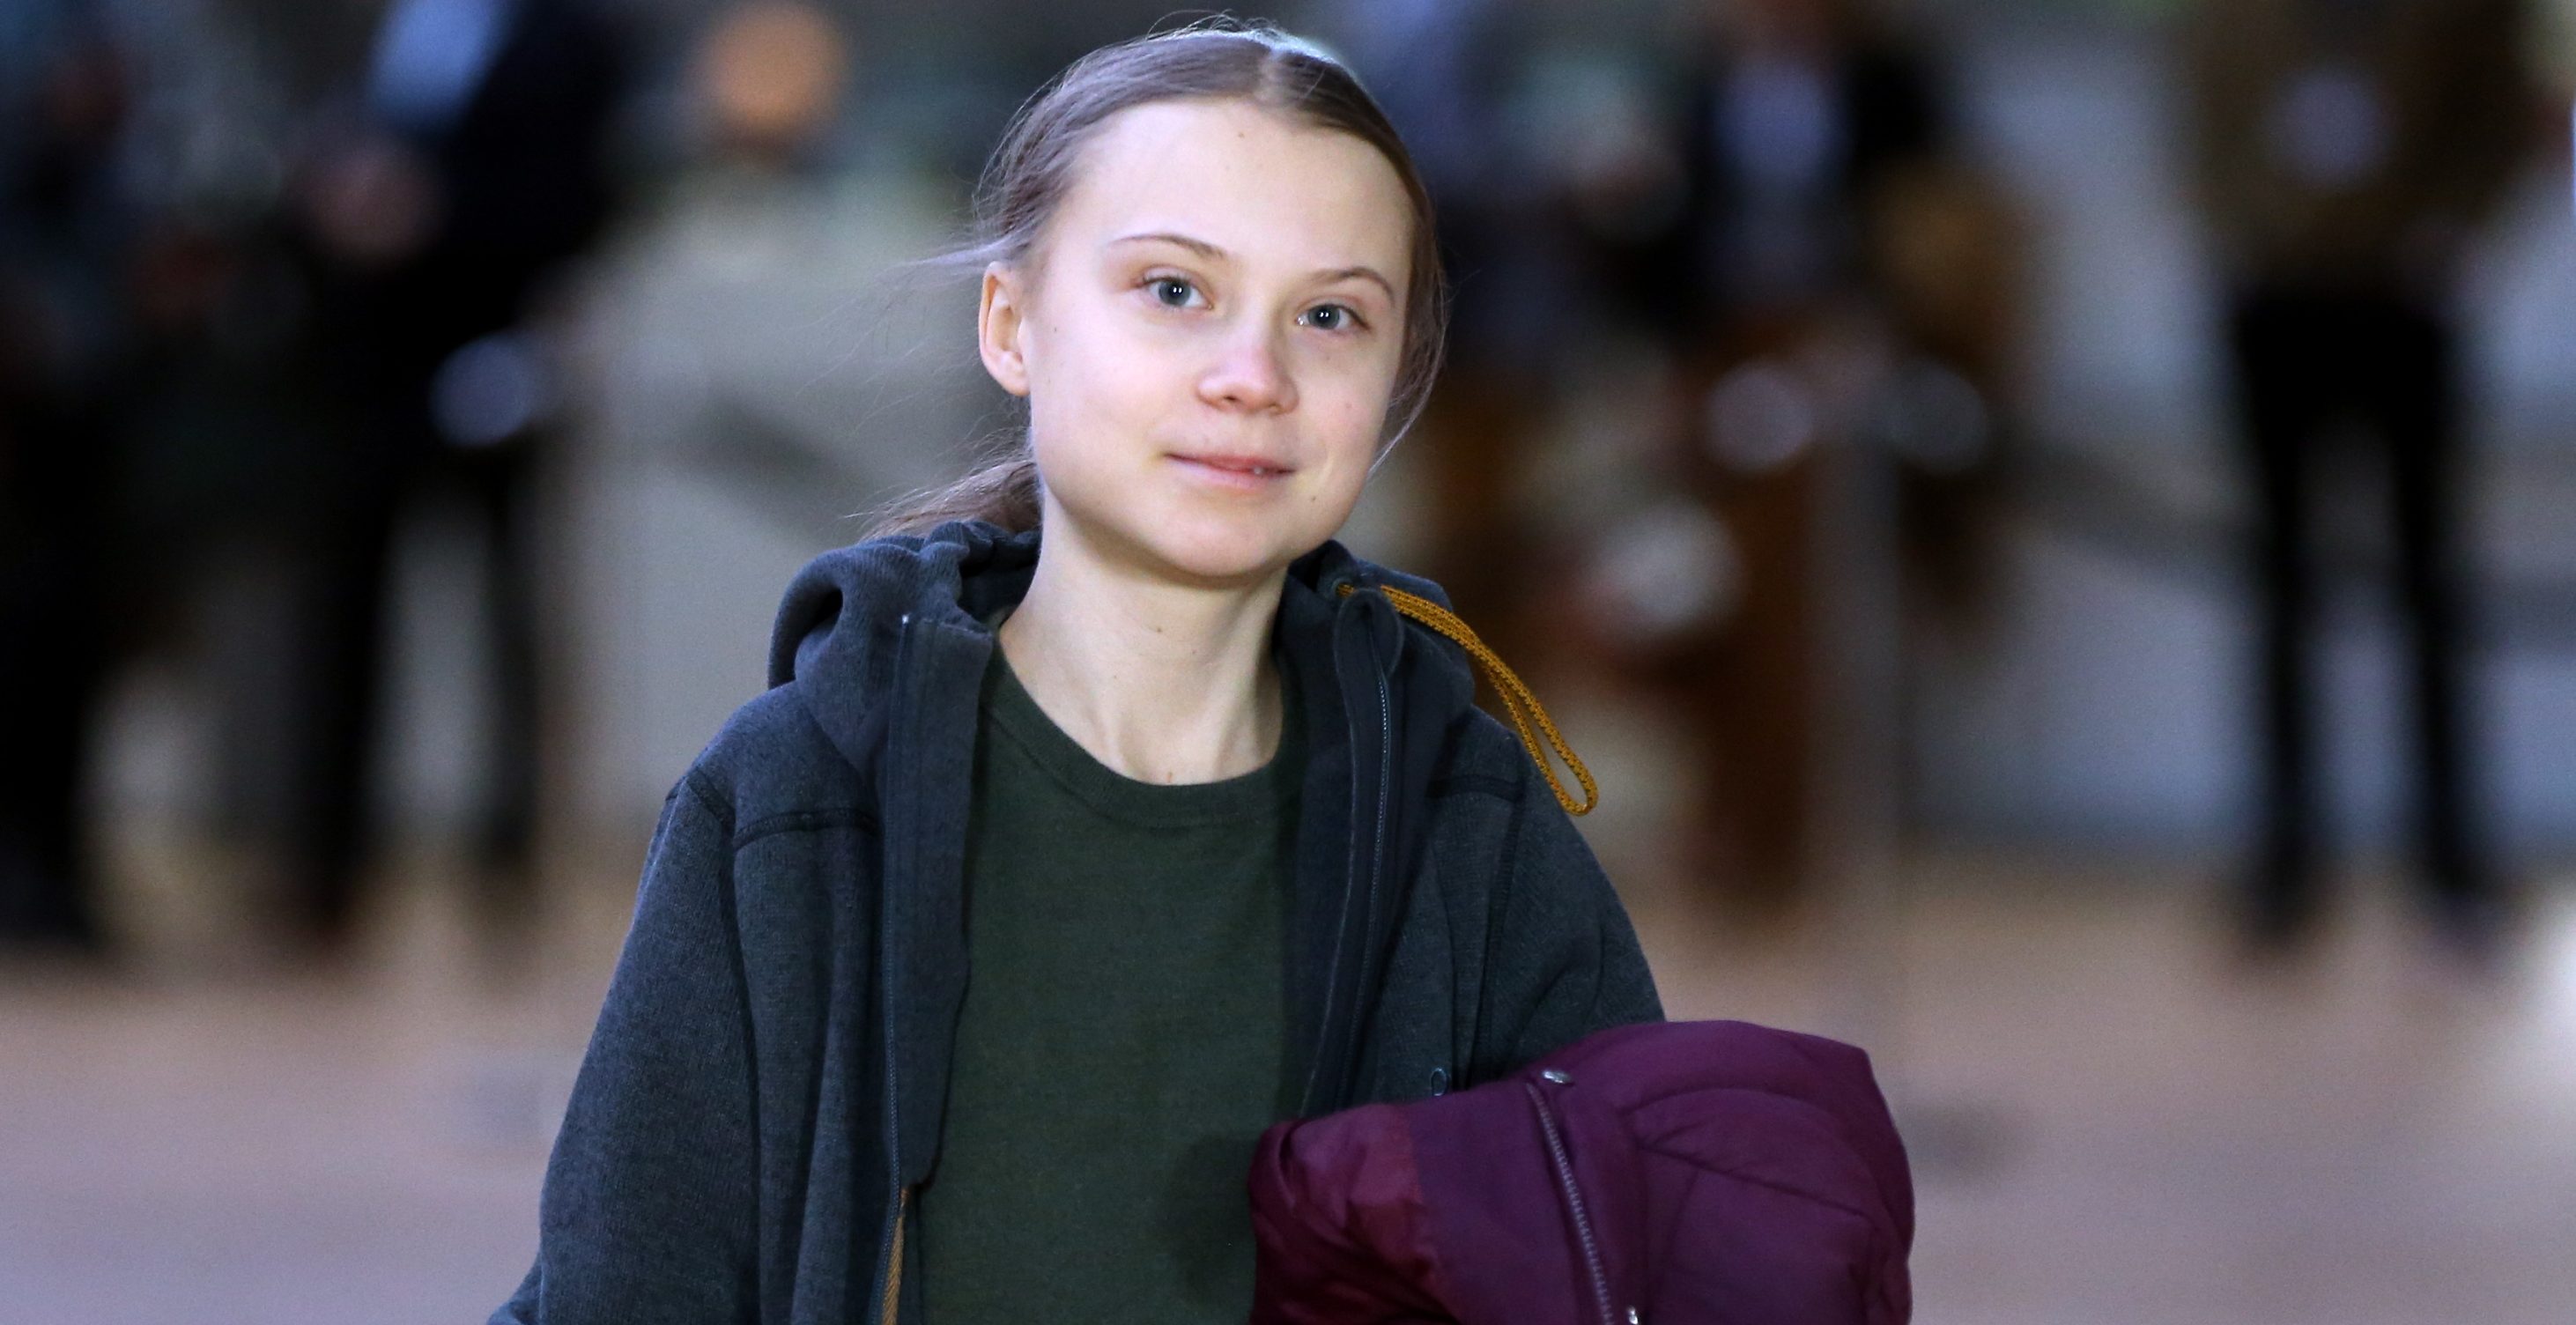 Hogy óvja a környezetet, Greta Thunberg 3 éve nem vett magának új ruhát